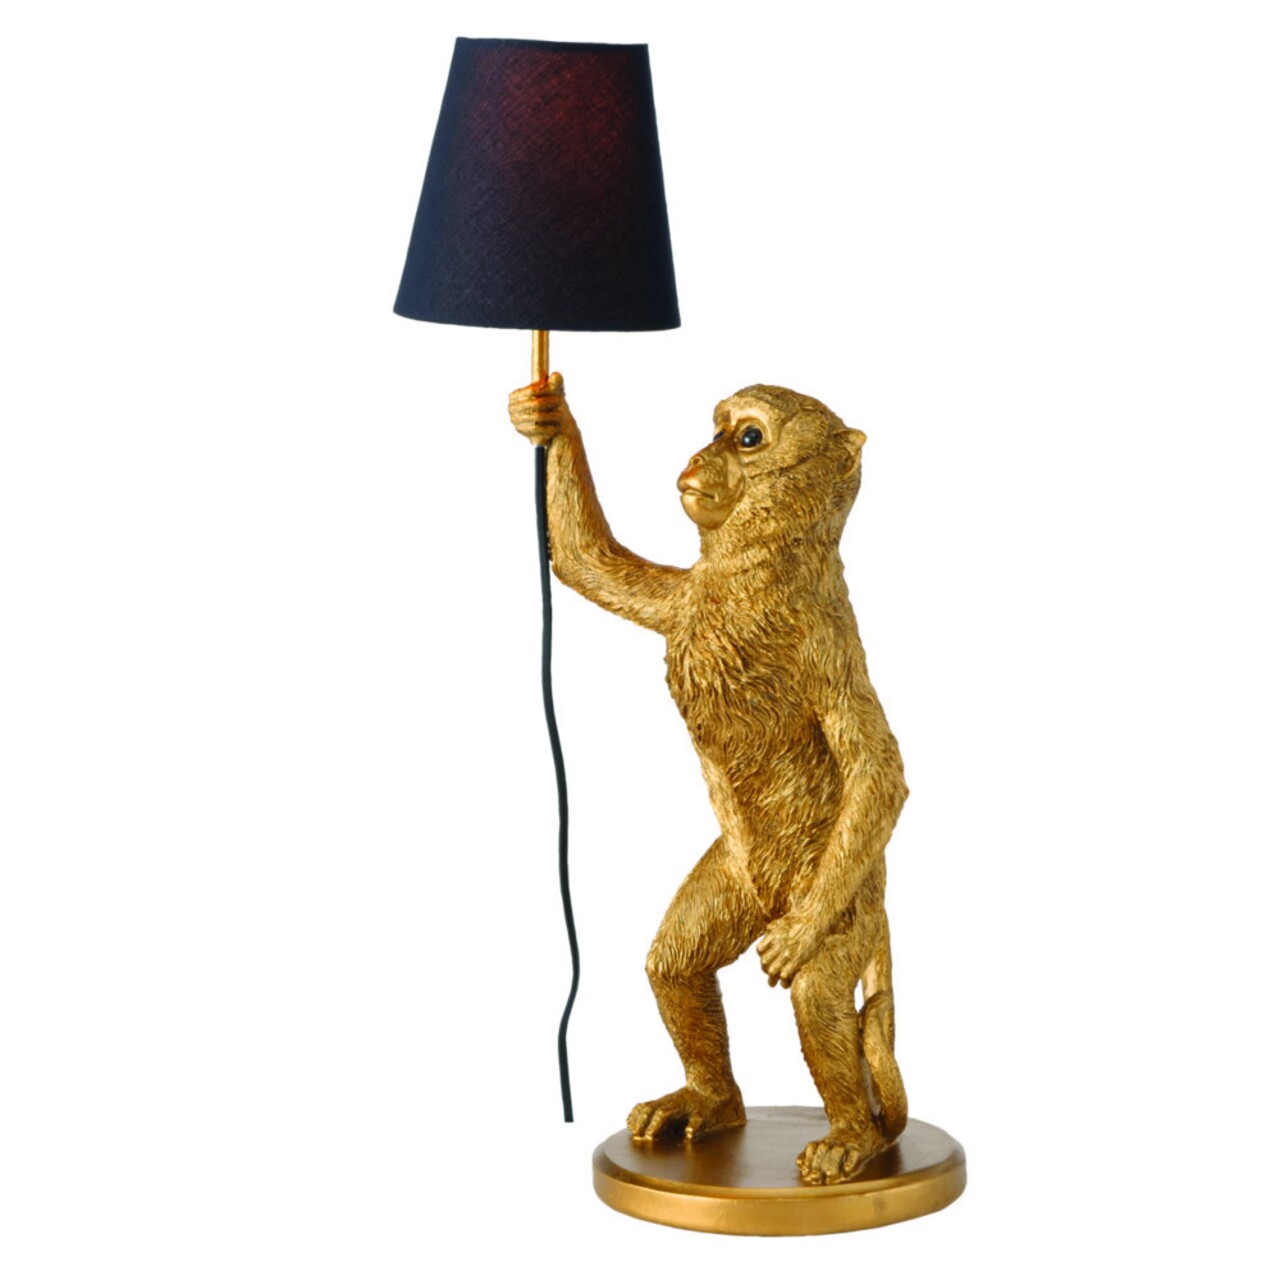 Monkey Saru Asztali lámpa, Boltze, 30x21x60 cm, 1 x E27, 60W, poligyanta, aranyszín